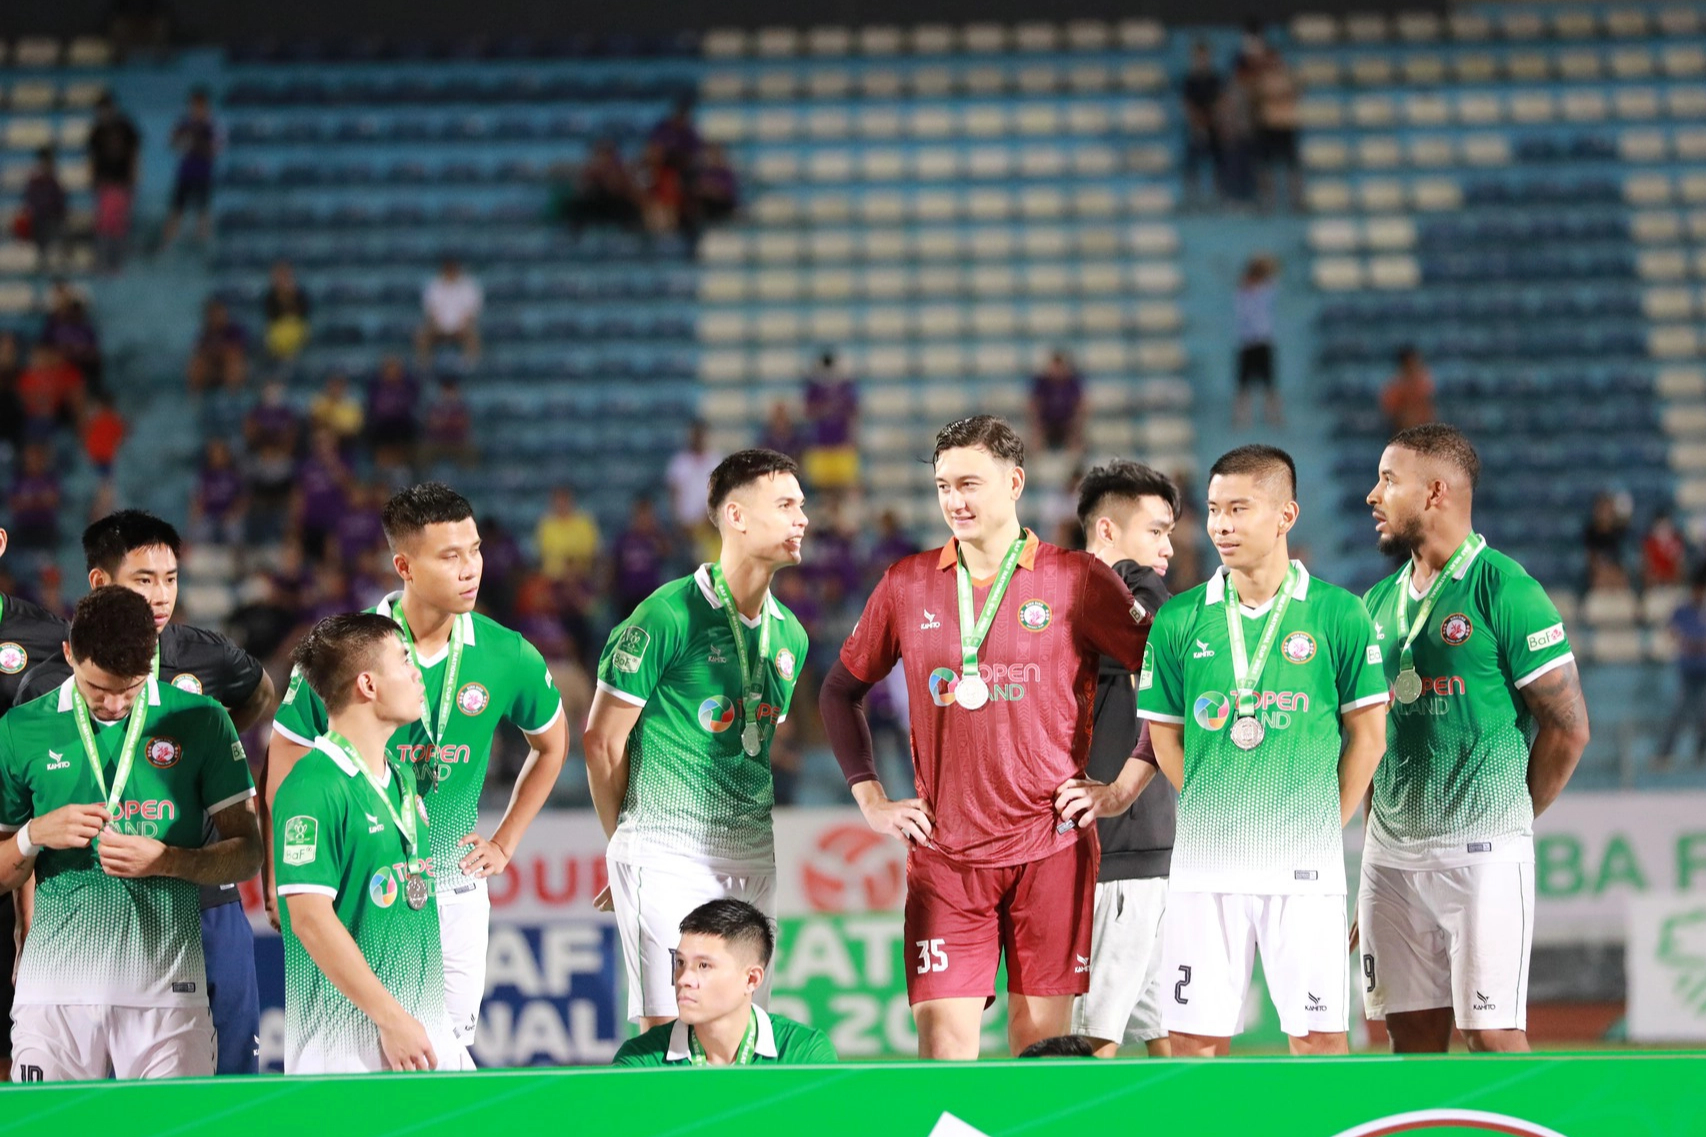 Cầu thủ Bình Định ‘rã rời’ sau thất bại tại chung kết Cup QG - Ảnh 23.